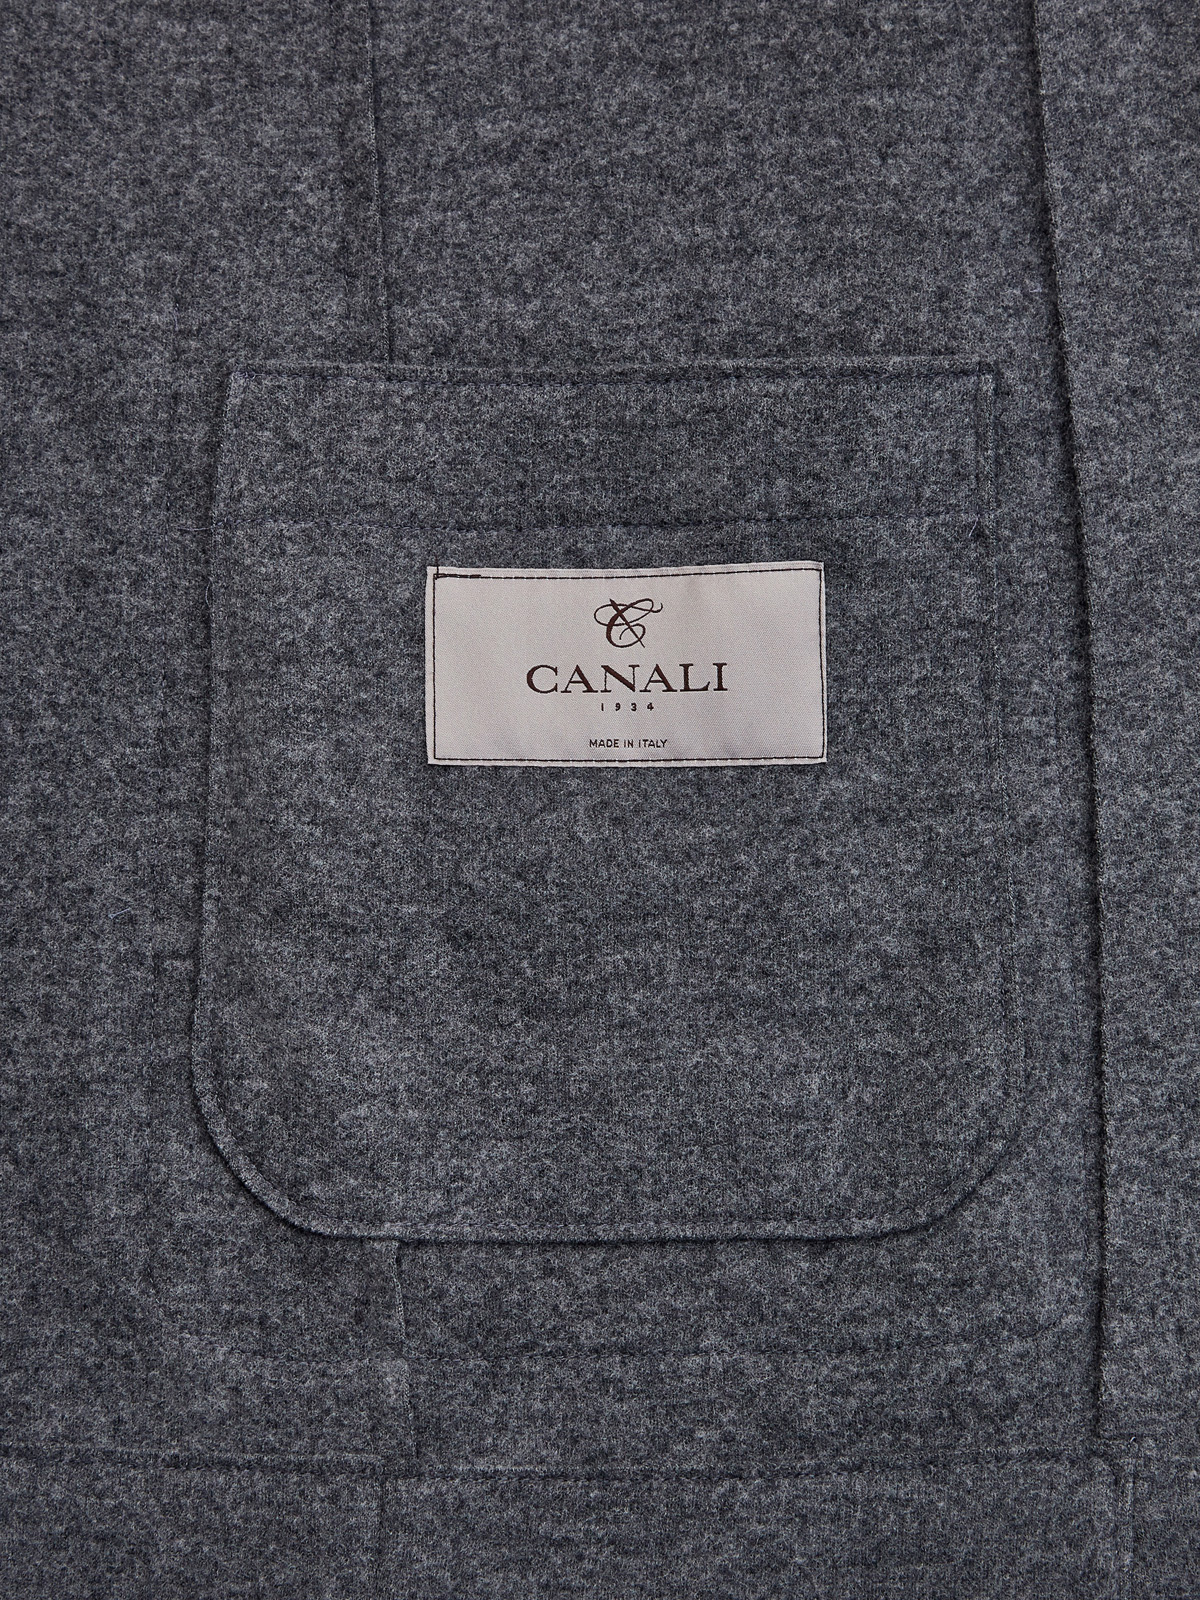 Блейзер в стиле sprezzatura из плотной шерстяной ткани CANALI, цвет серый, размер 50;54;56 - фото 4